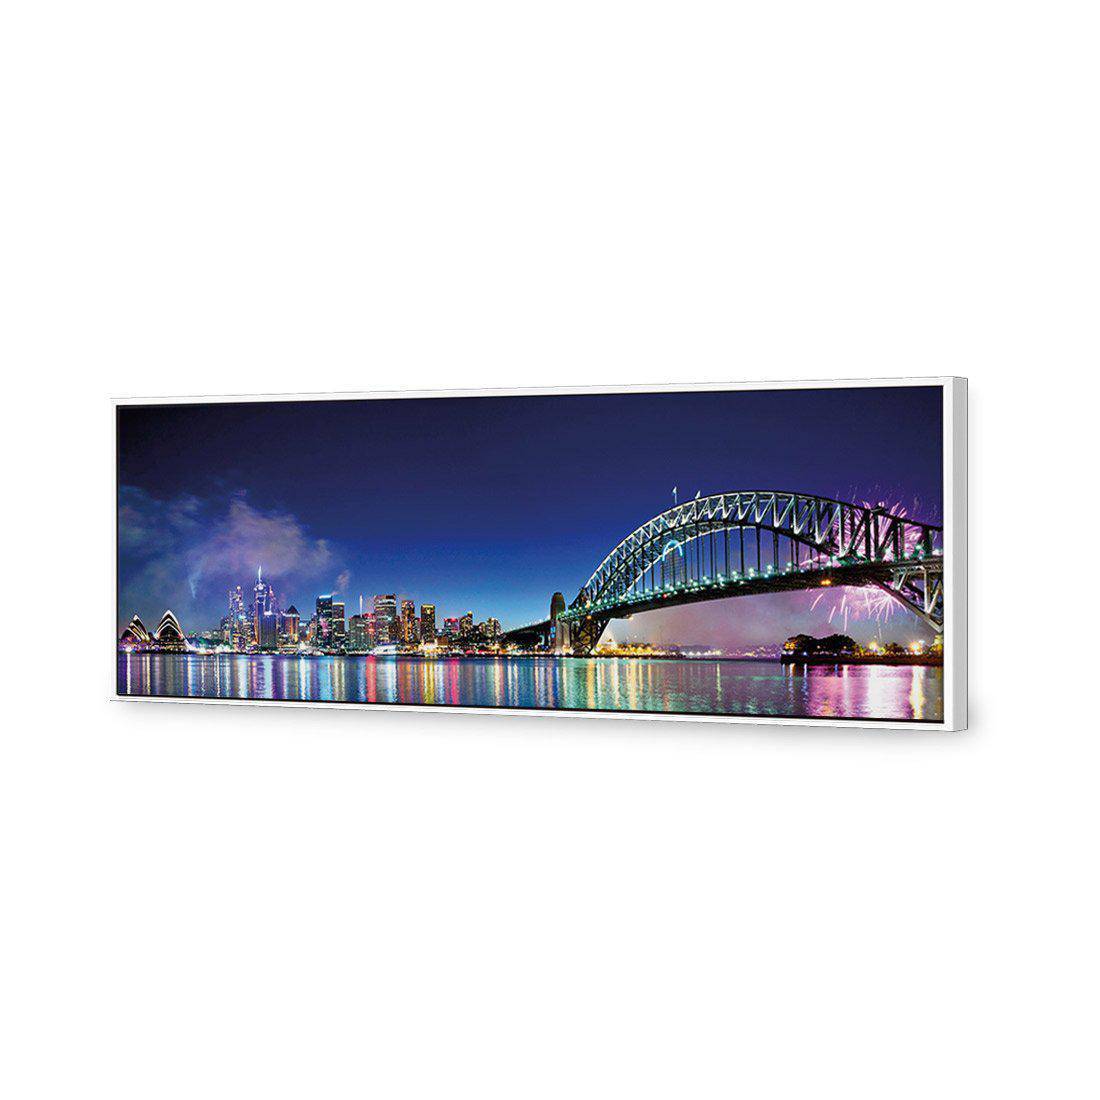 Sydney Celebration Canvas Art-Canvas-Wall Art Designs-60x20cm-Canvas - White Frame-Wall Art Designs